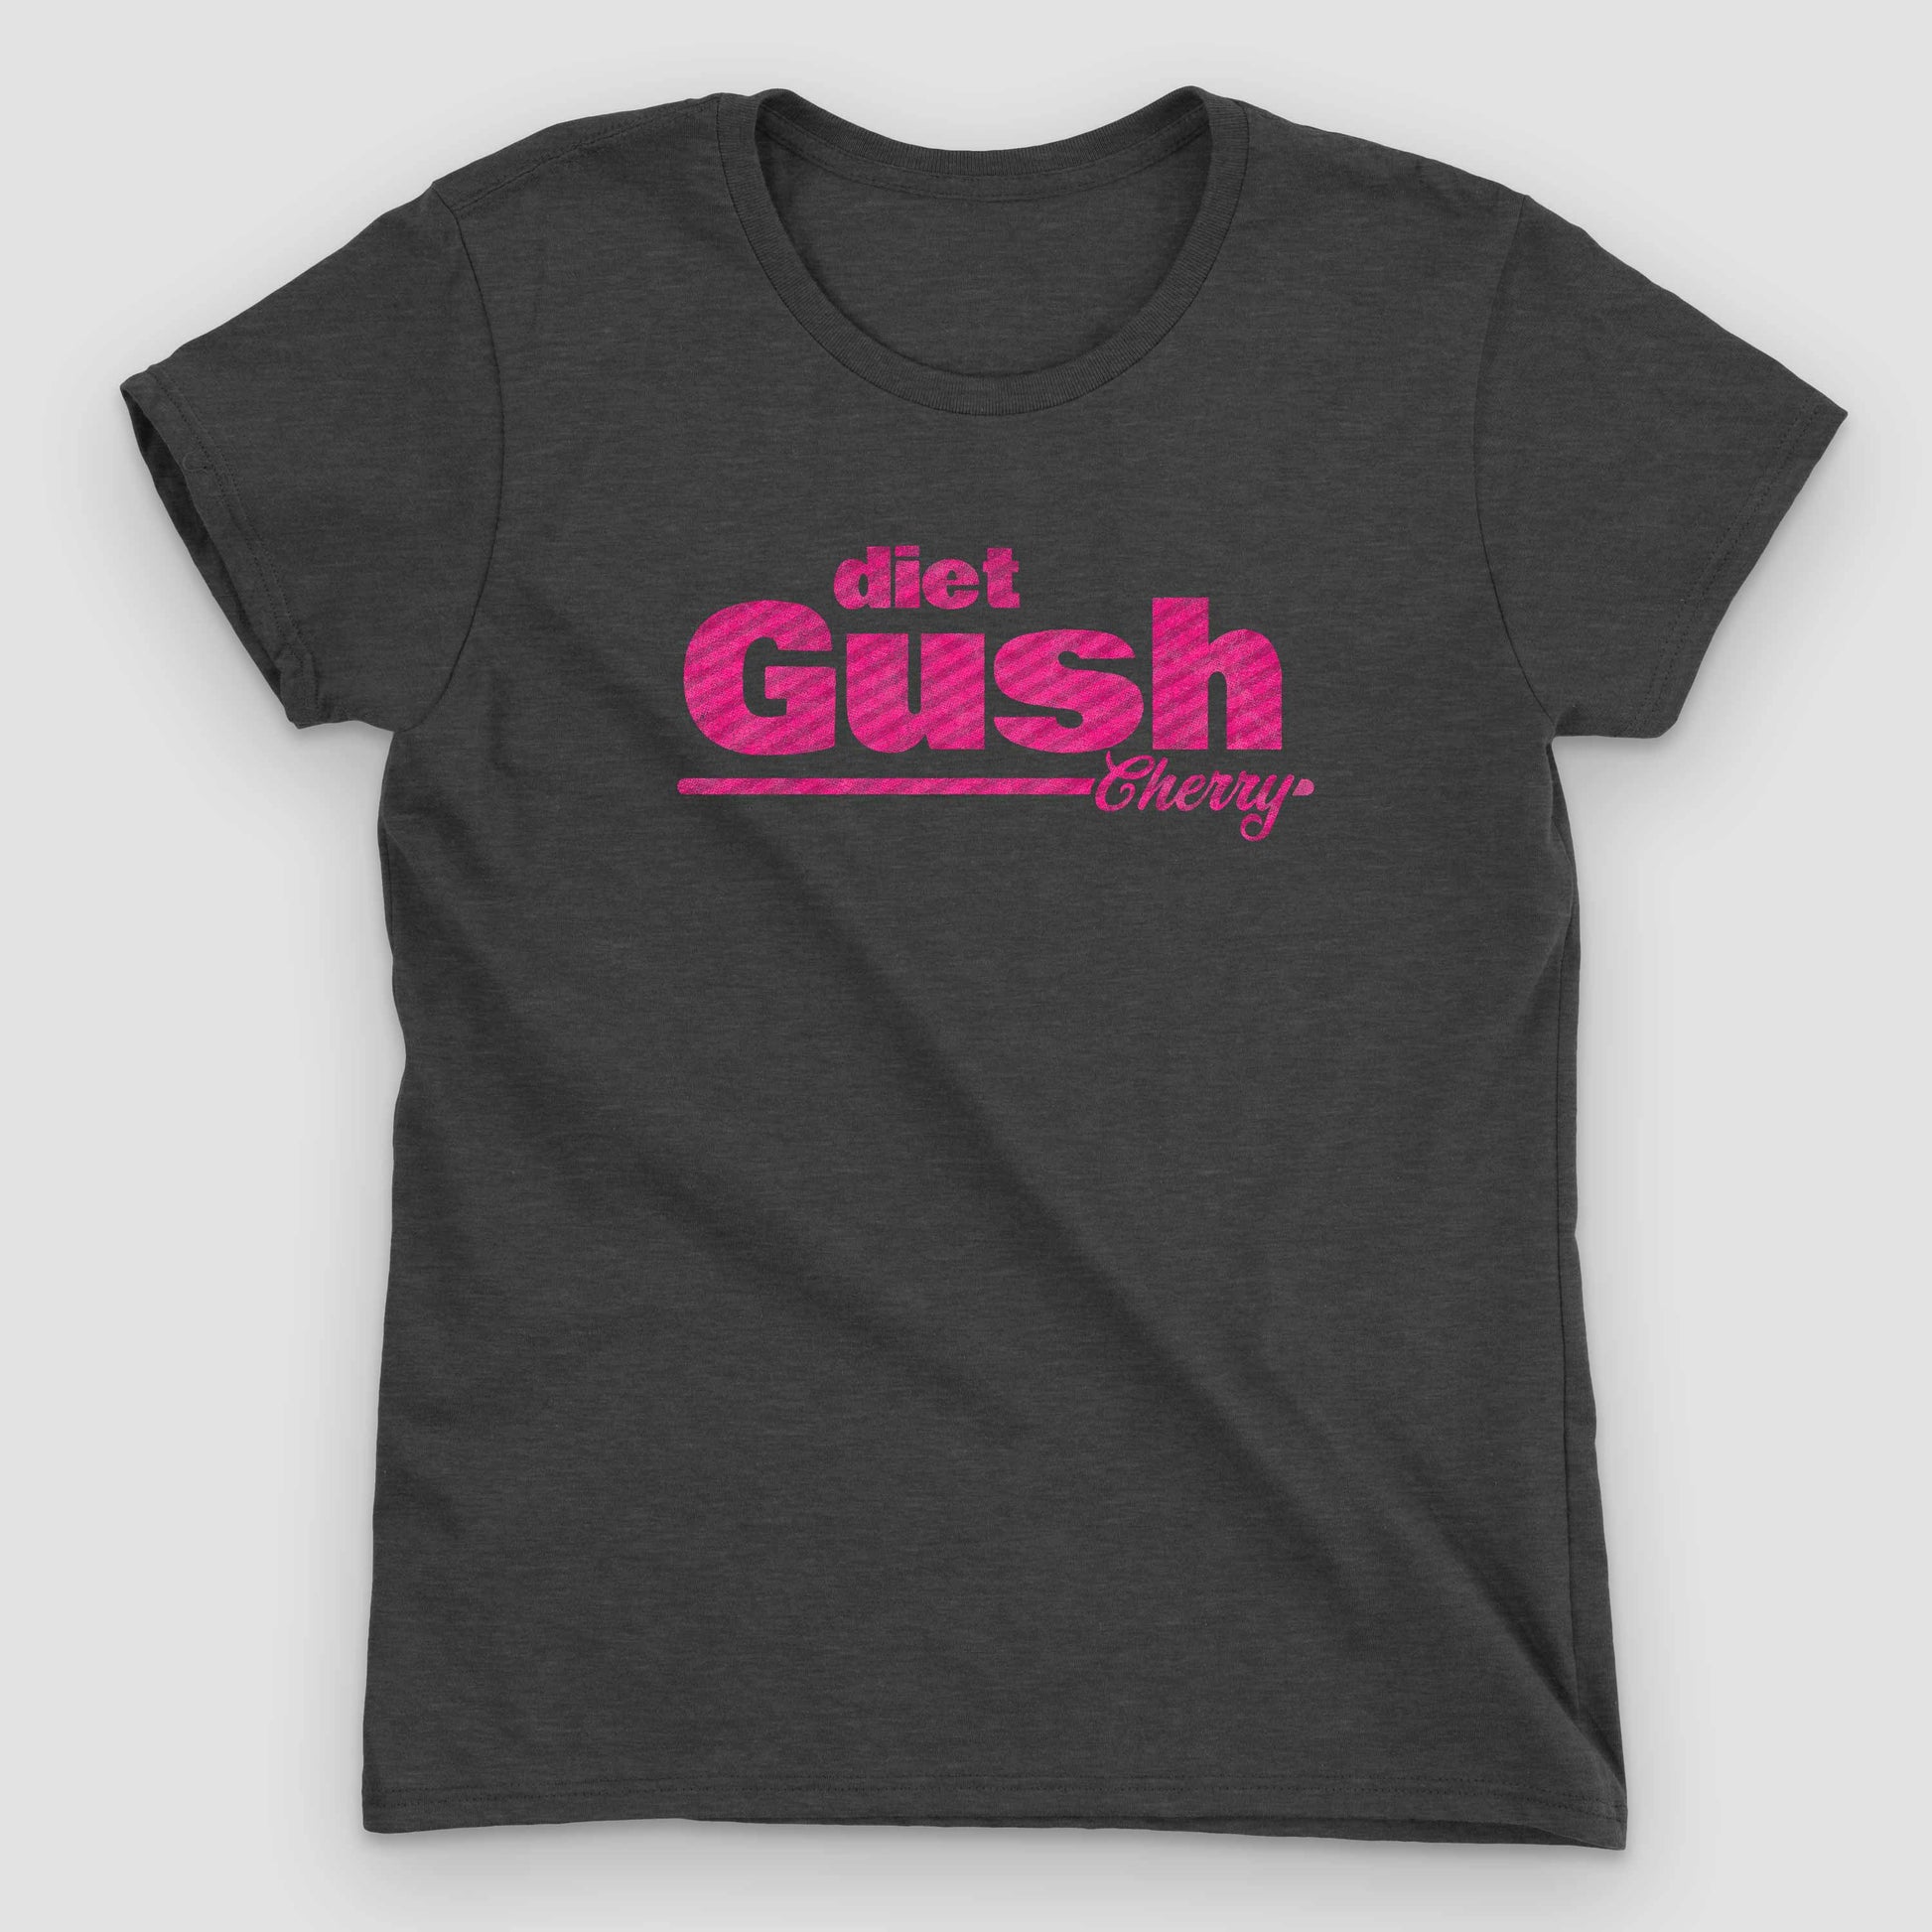 Heather Dark Grey Diet Gush Cherry Soda Women's Graphic T-Shirt by Snaxtime